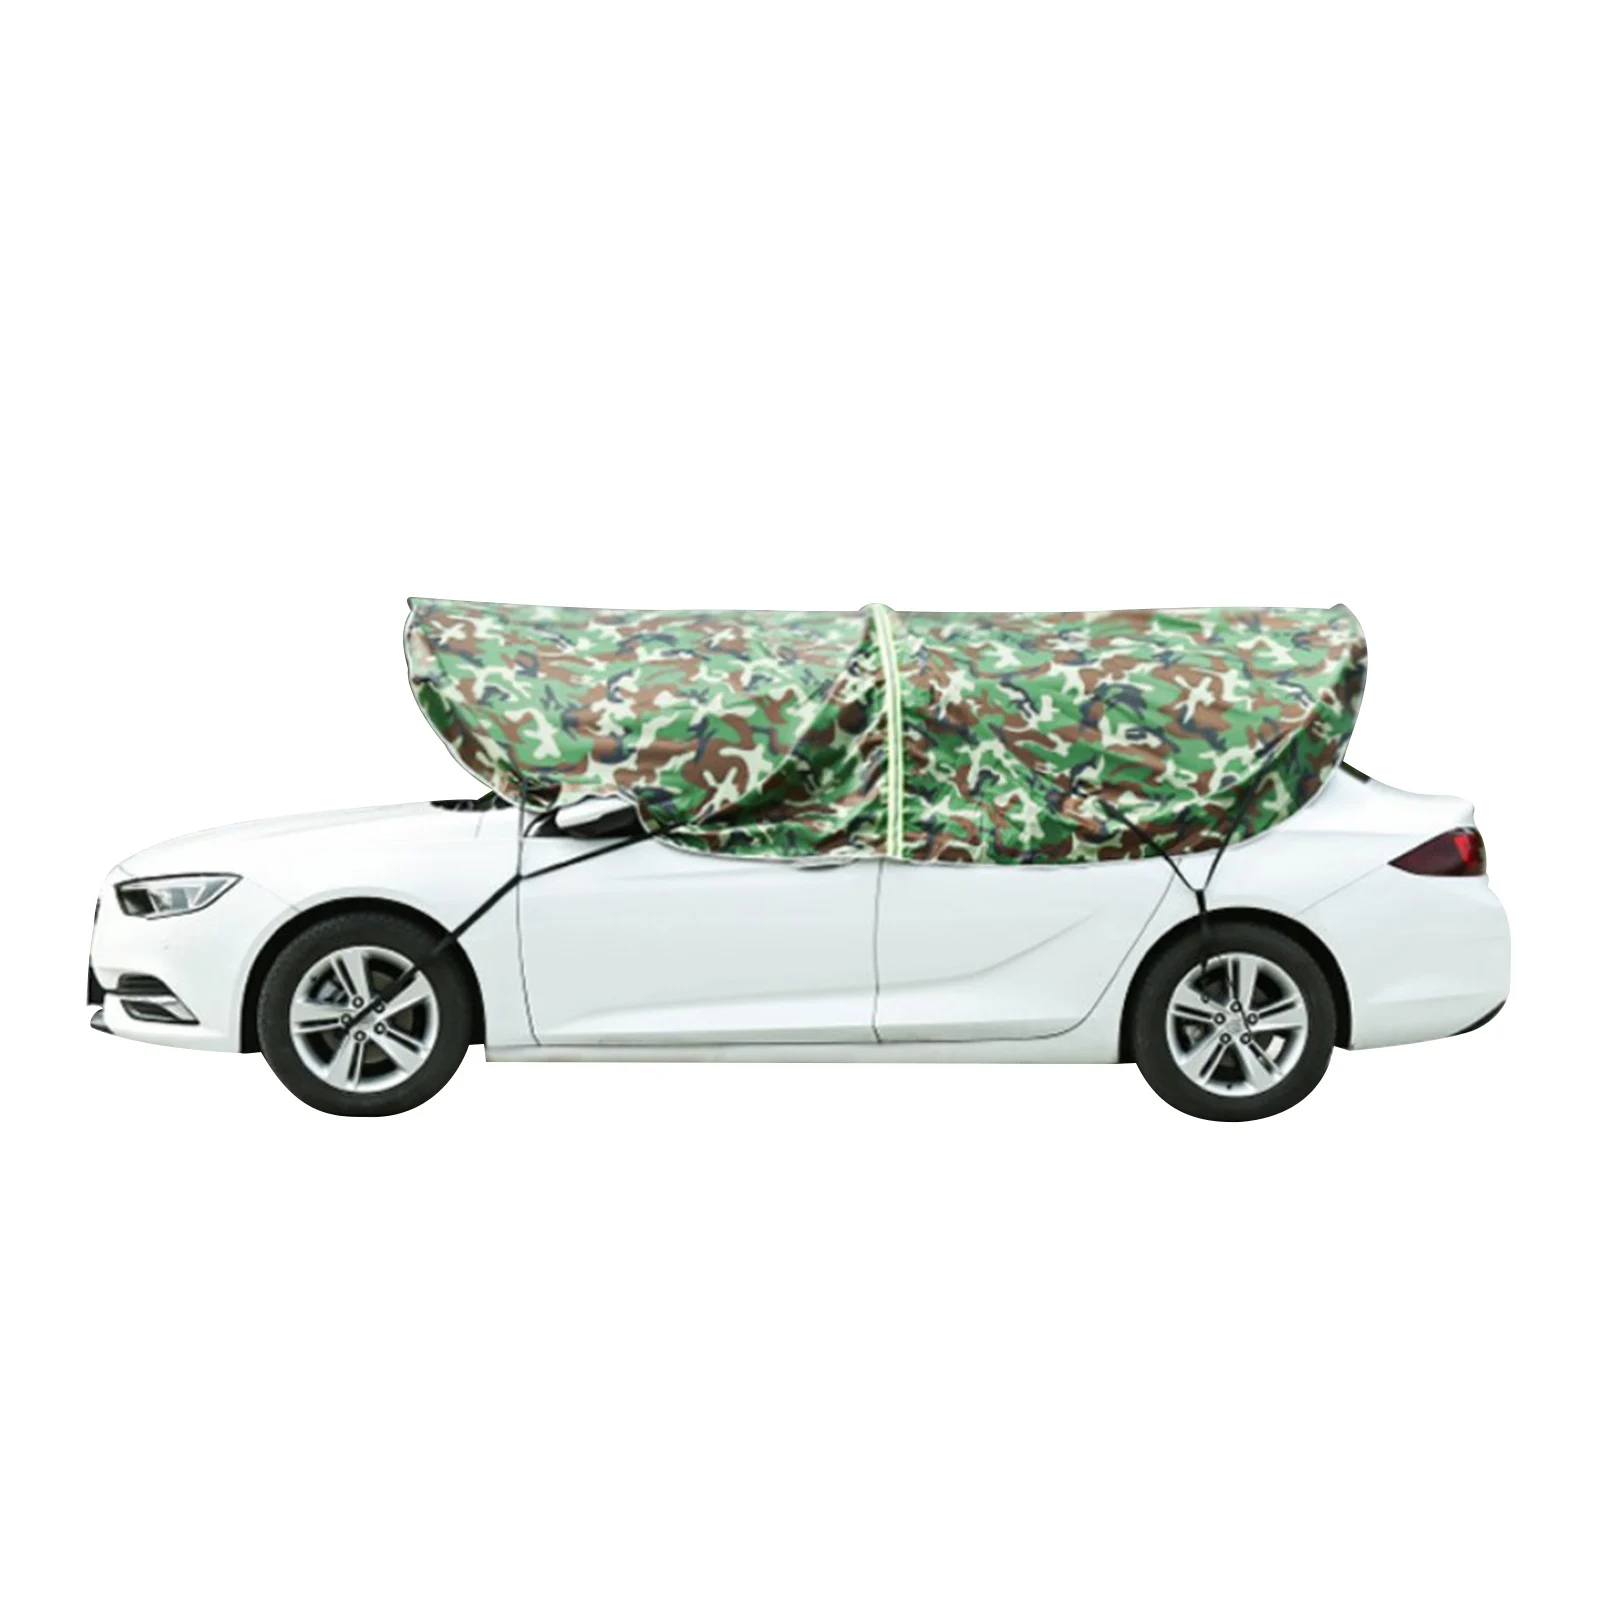 Auto Schatten Abdeckung Zelt Windschutz scheibe Sonnenschutz Auto Zelt  bewegliche Carport gefaltet tragbare Autos chutz Auto Regenschirm  Sonnenschutz